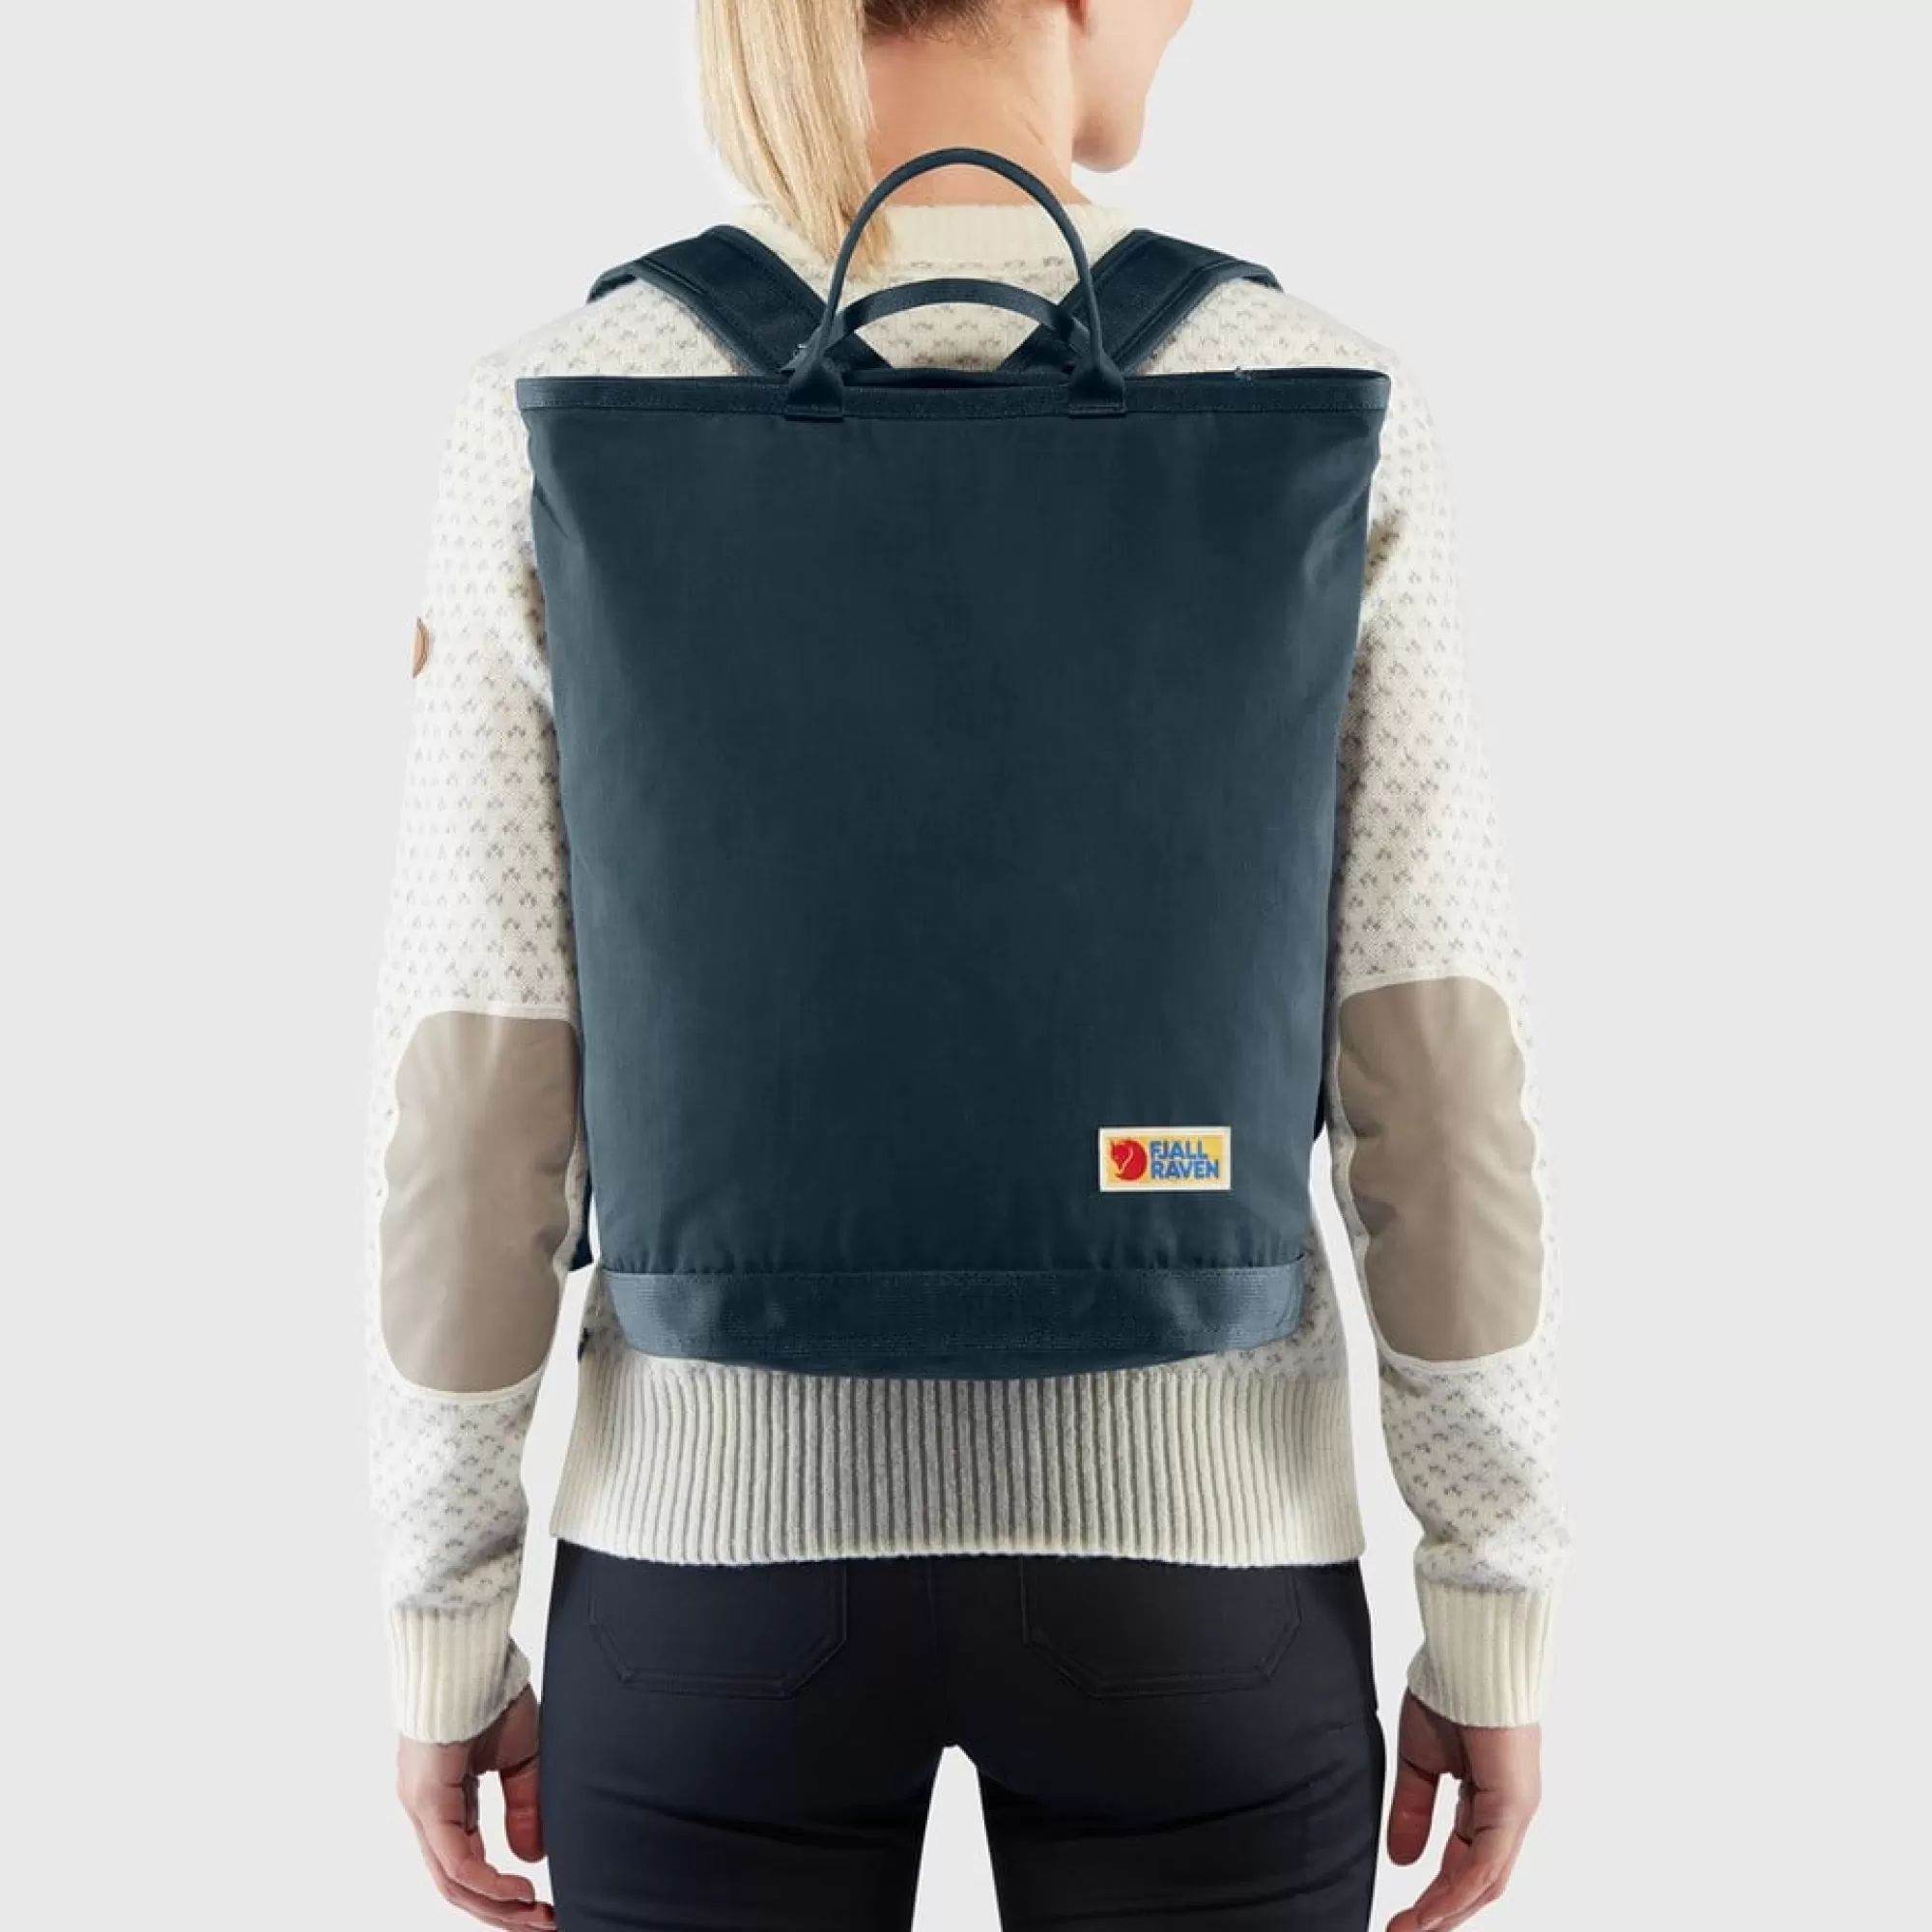 Backpacks & bags*WOMEN Fjallraven Vardag Totepack CabinRed